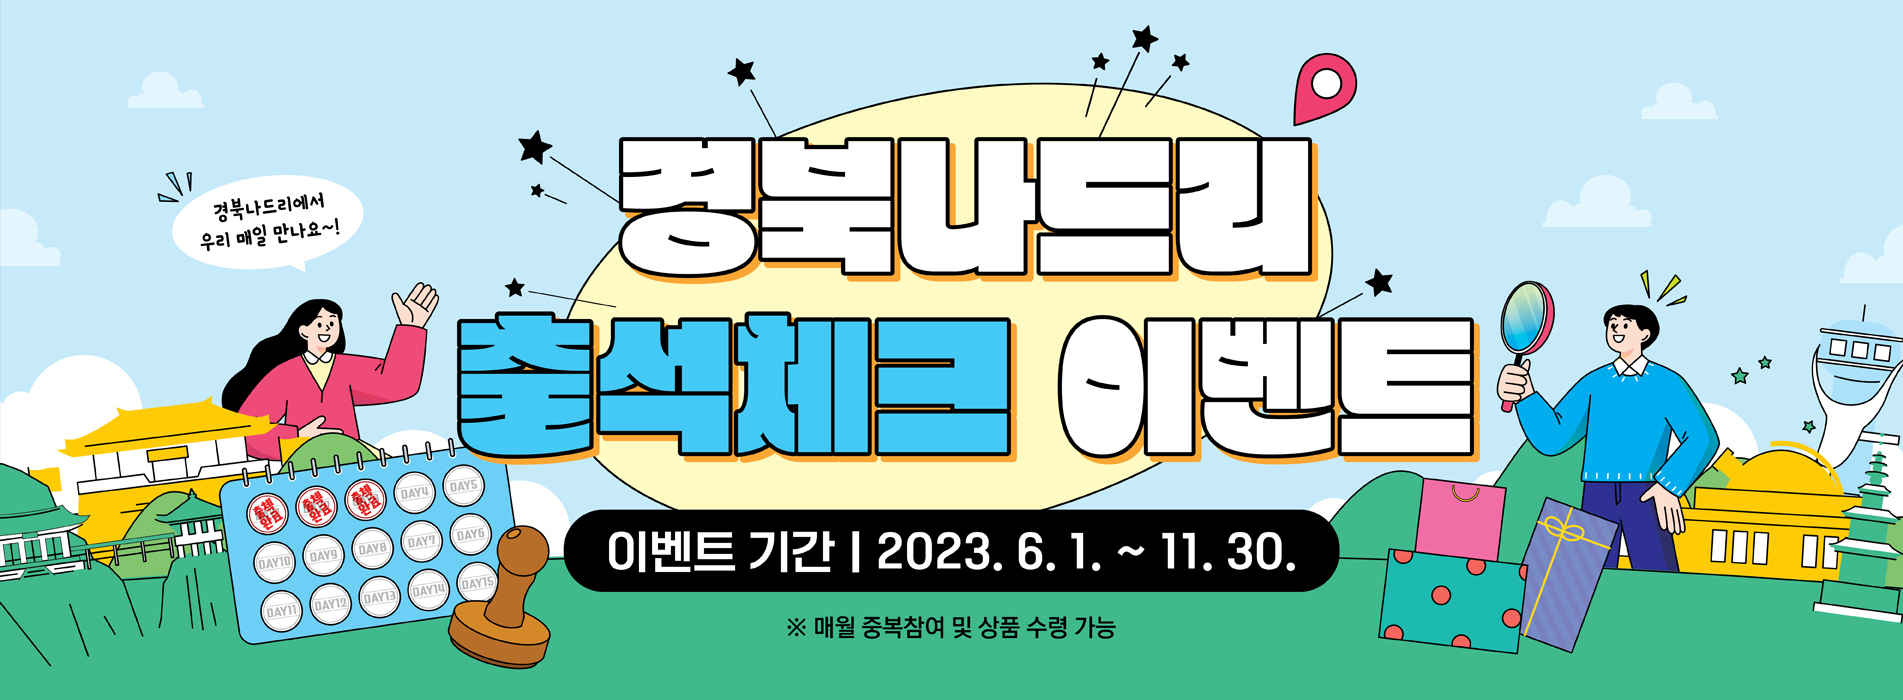 경북나드리 출석체크 이벤트 이벤트기간 | 2023. 6. 1. ~ 11. 30. ※ 매월 중복참여 및 상품 수령 가능